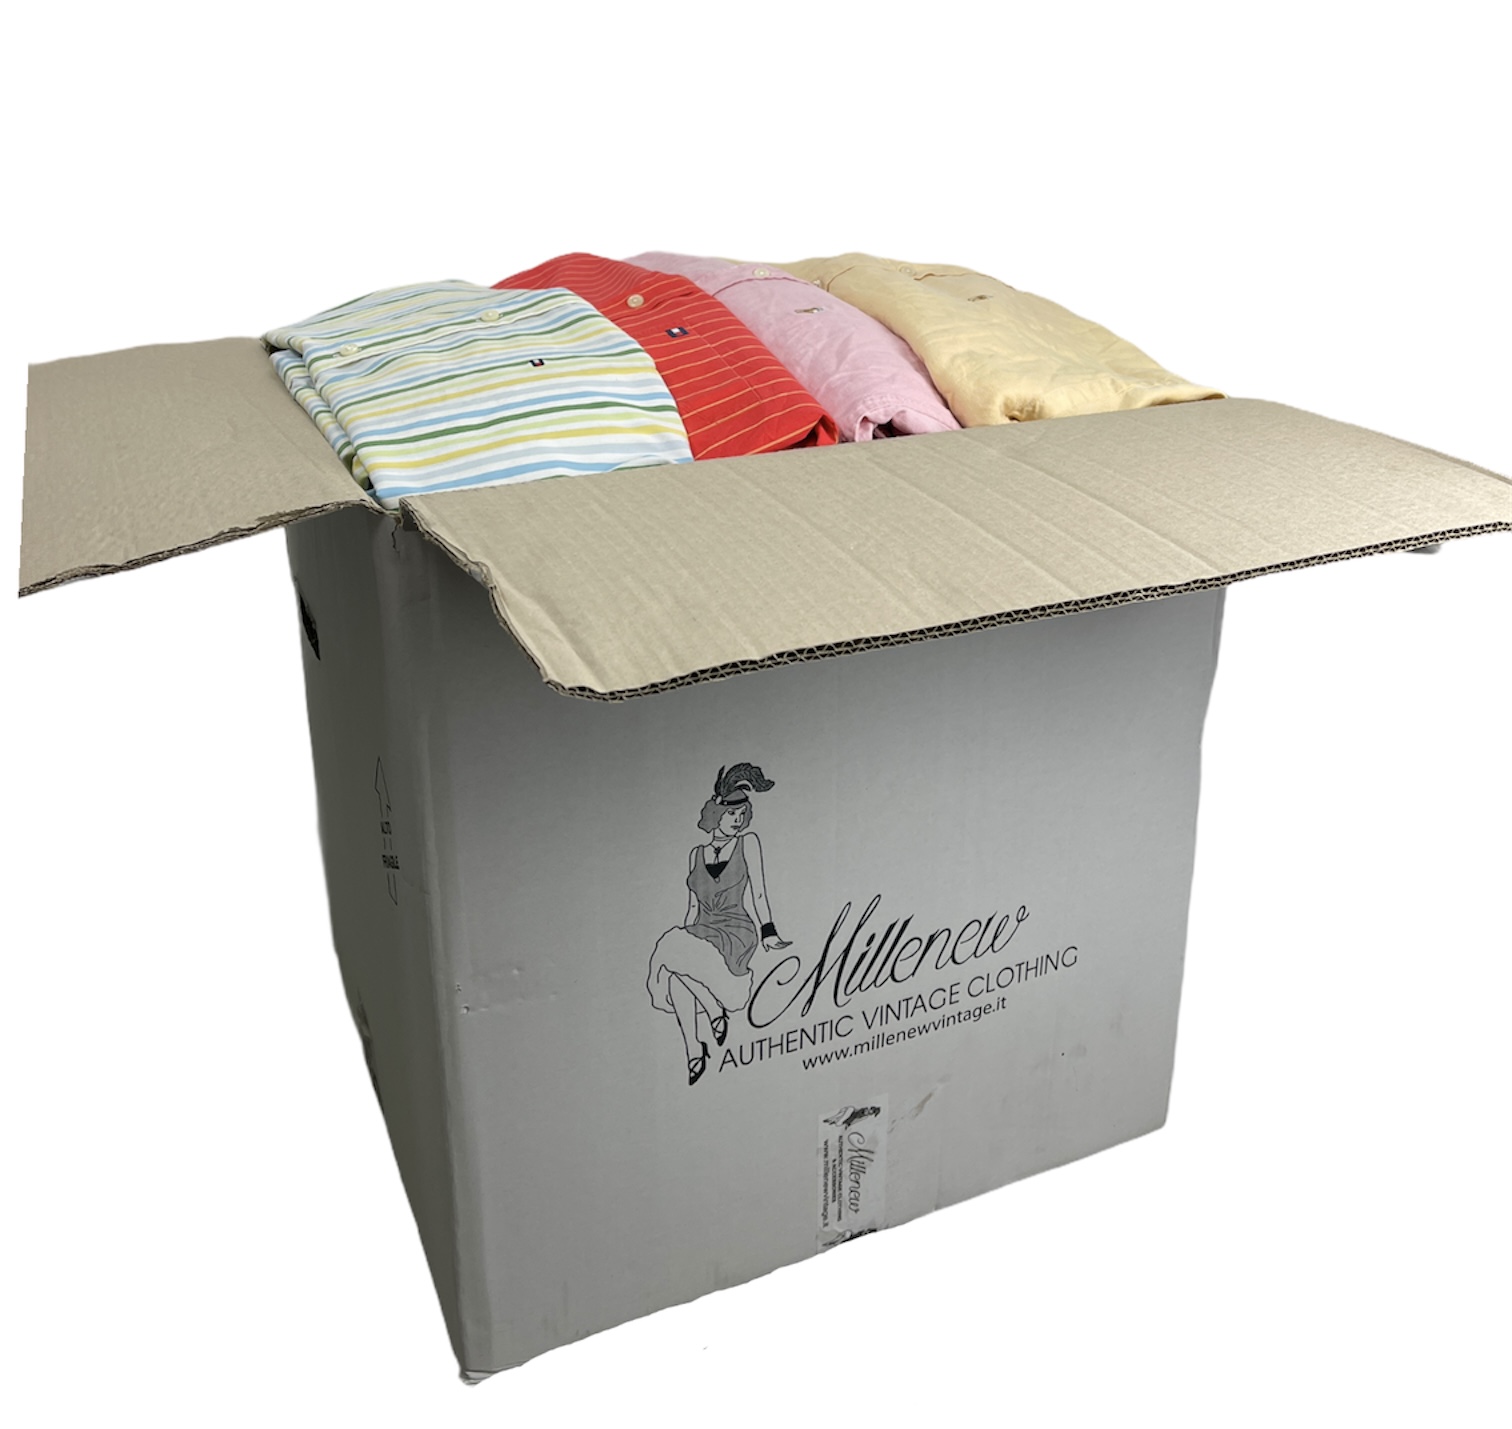 Scatola bianca di cartone che contiene al suo interno delle camicie vintage di marca Ralph Lauren e Tommy Hilfigier di vari modelli, colori e taglie